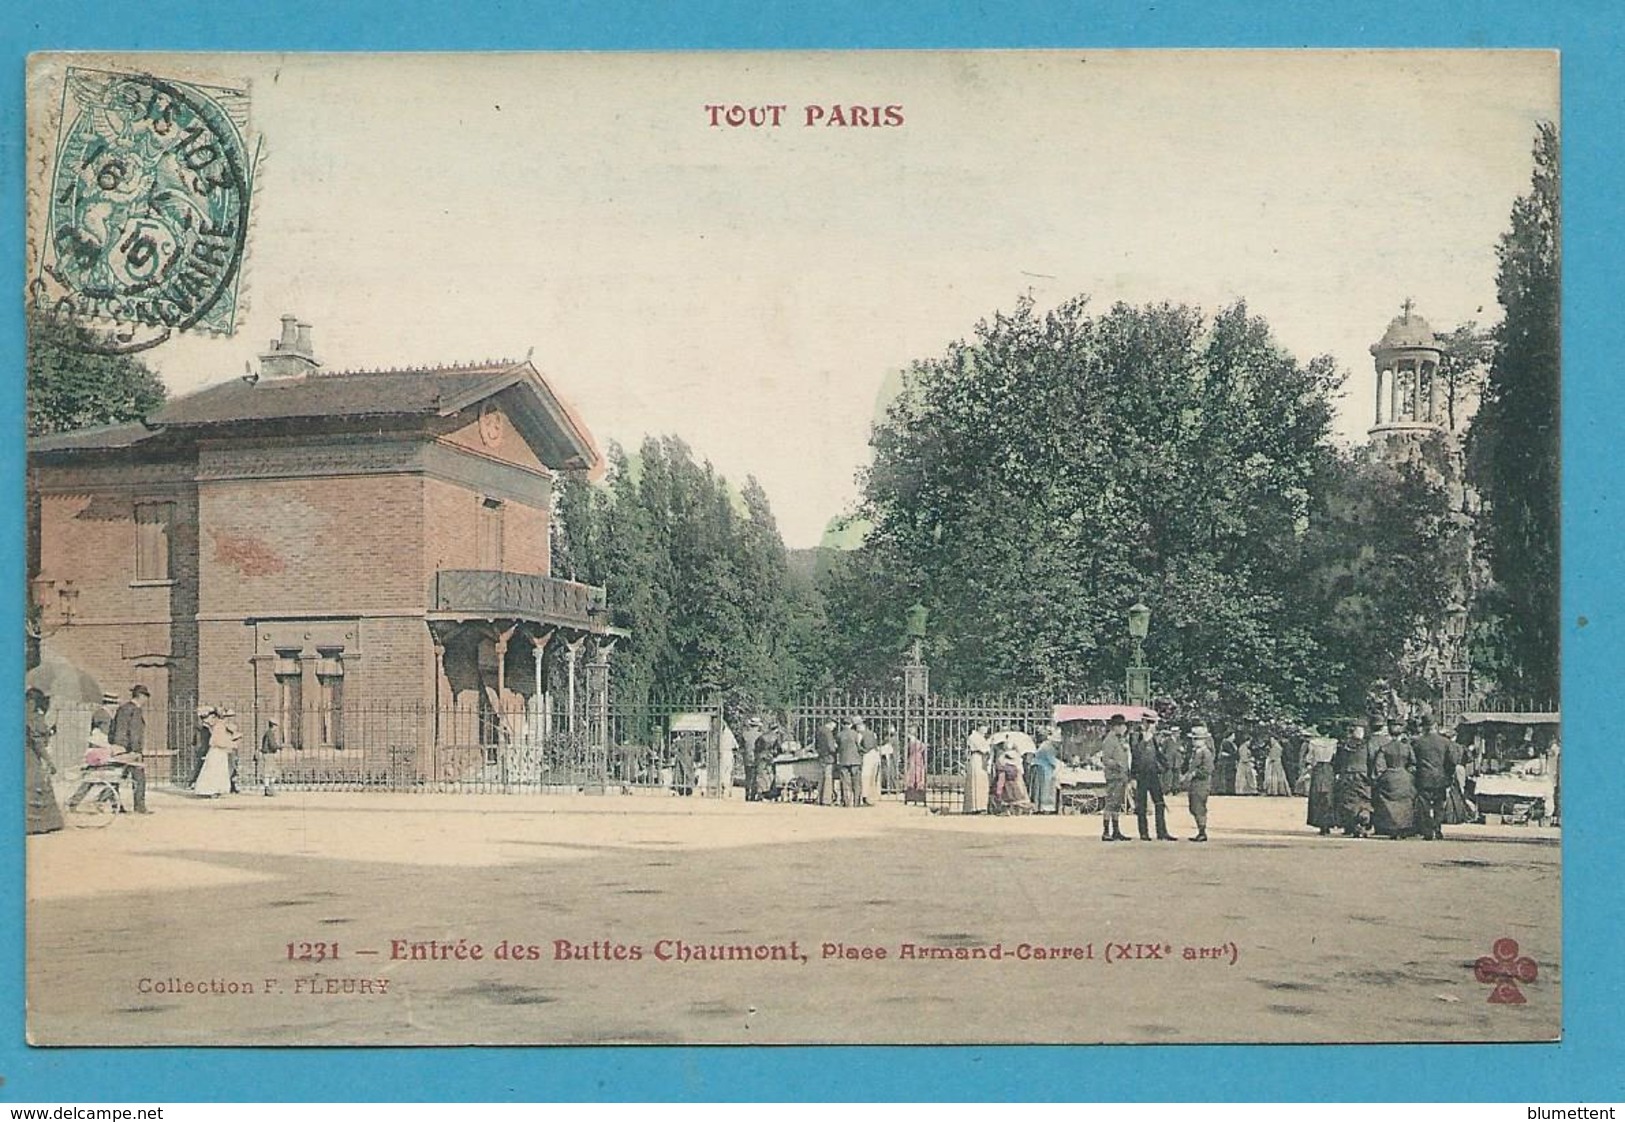 CPA 1231 TOUT PARIS - Entrée Des Buttes-Chaumon Place Armand-Carrel (XIXè Arrt)  Ed.FLEURY - Distrito: 19